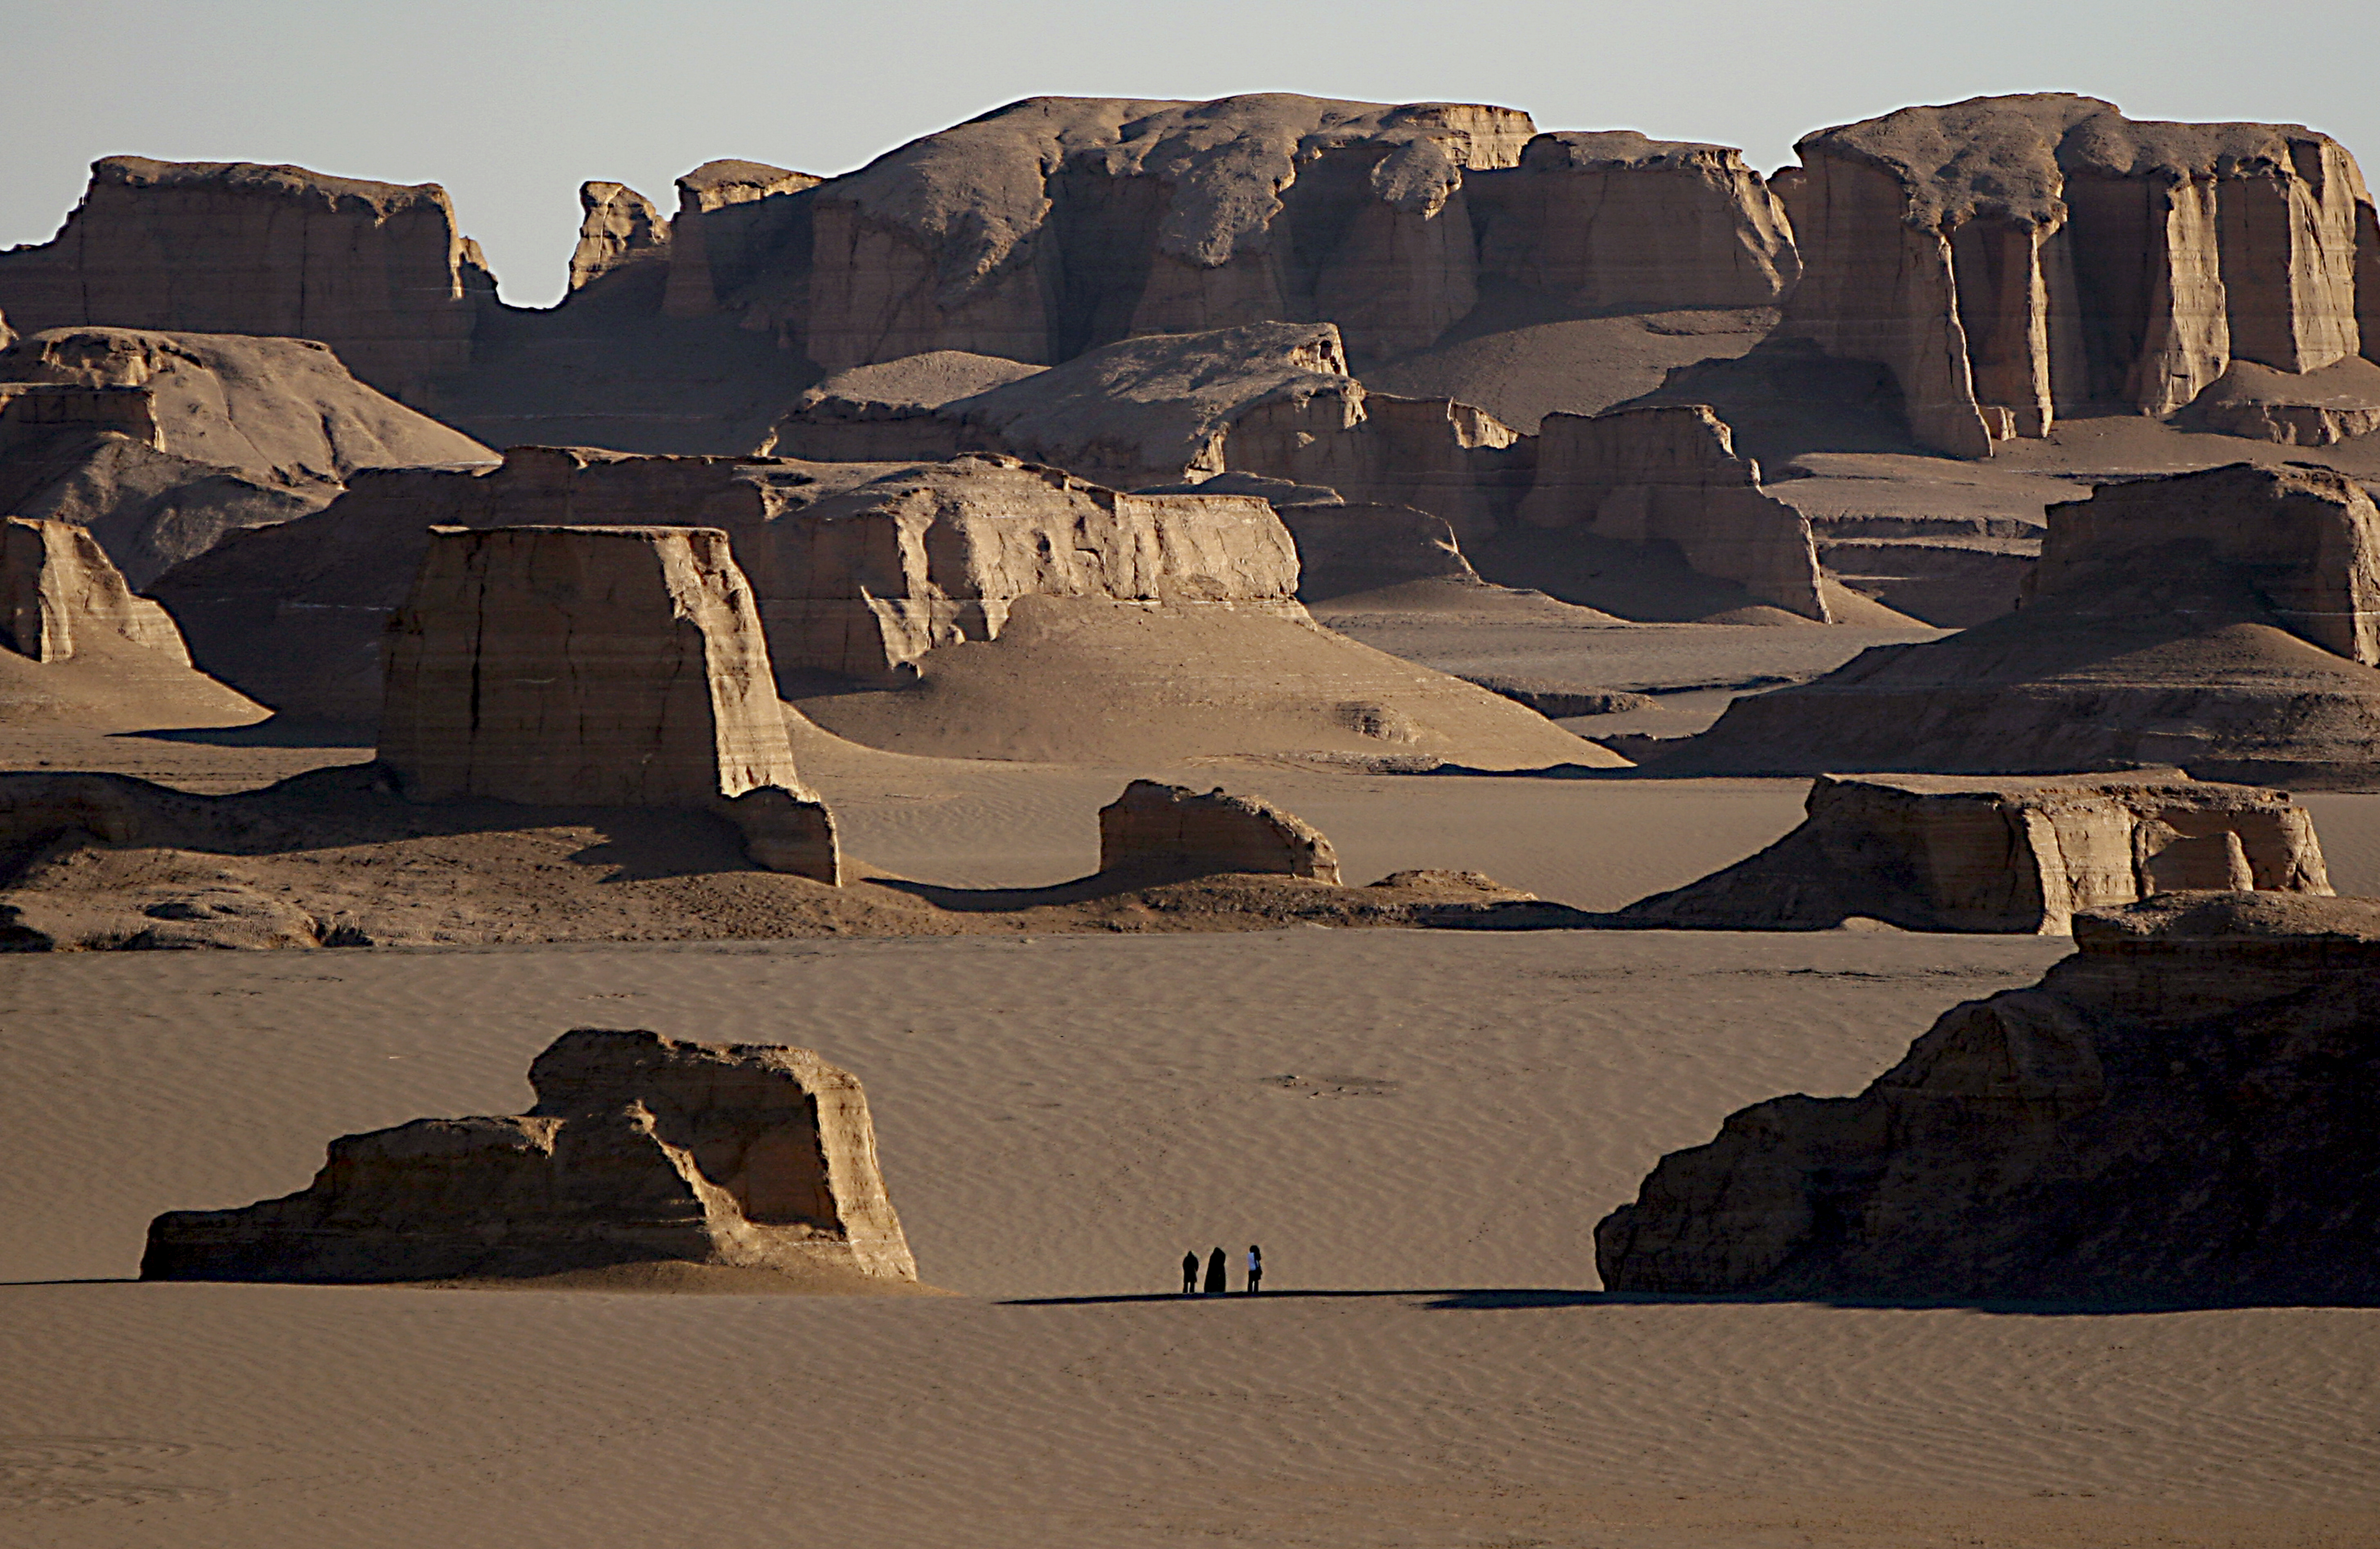 Tourists admiring yardangs in Lut Desert.